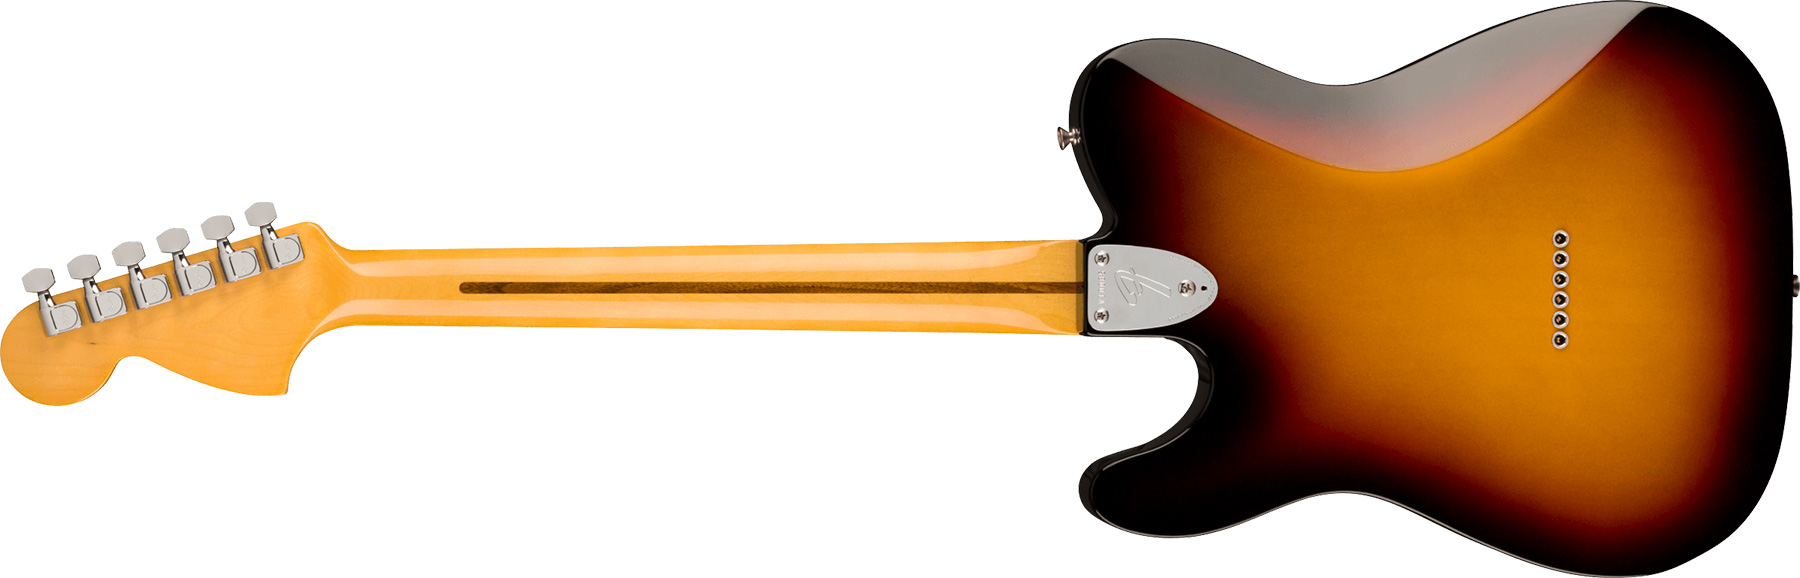 Fender Tele Deluxe 1975 American Vintage Ii Usa 2h Ht Mn - 3-color Sunburst - Tel shape electric guitar - Variation 1